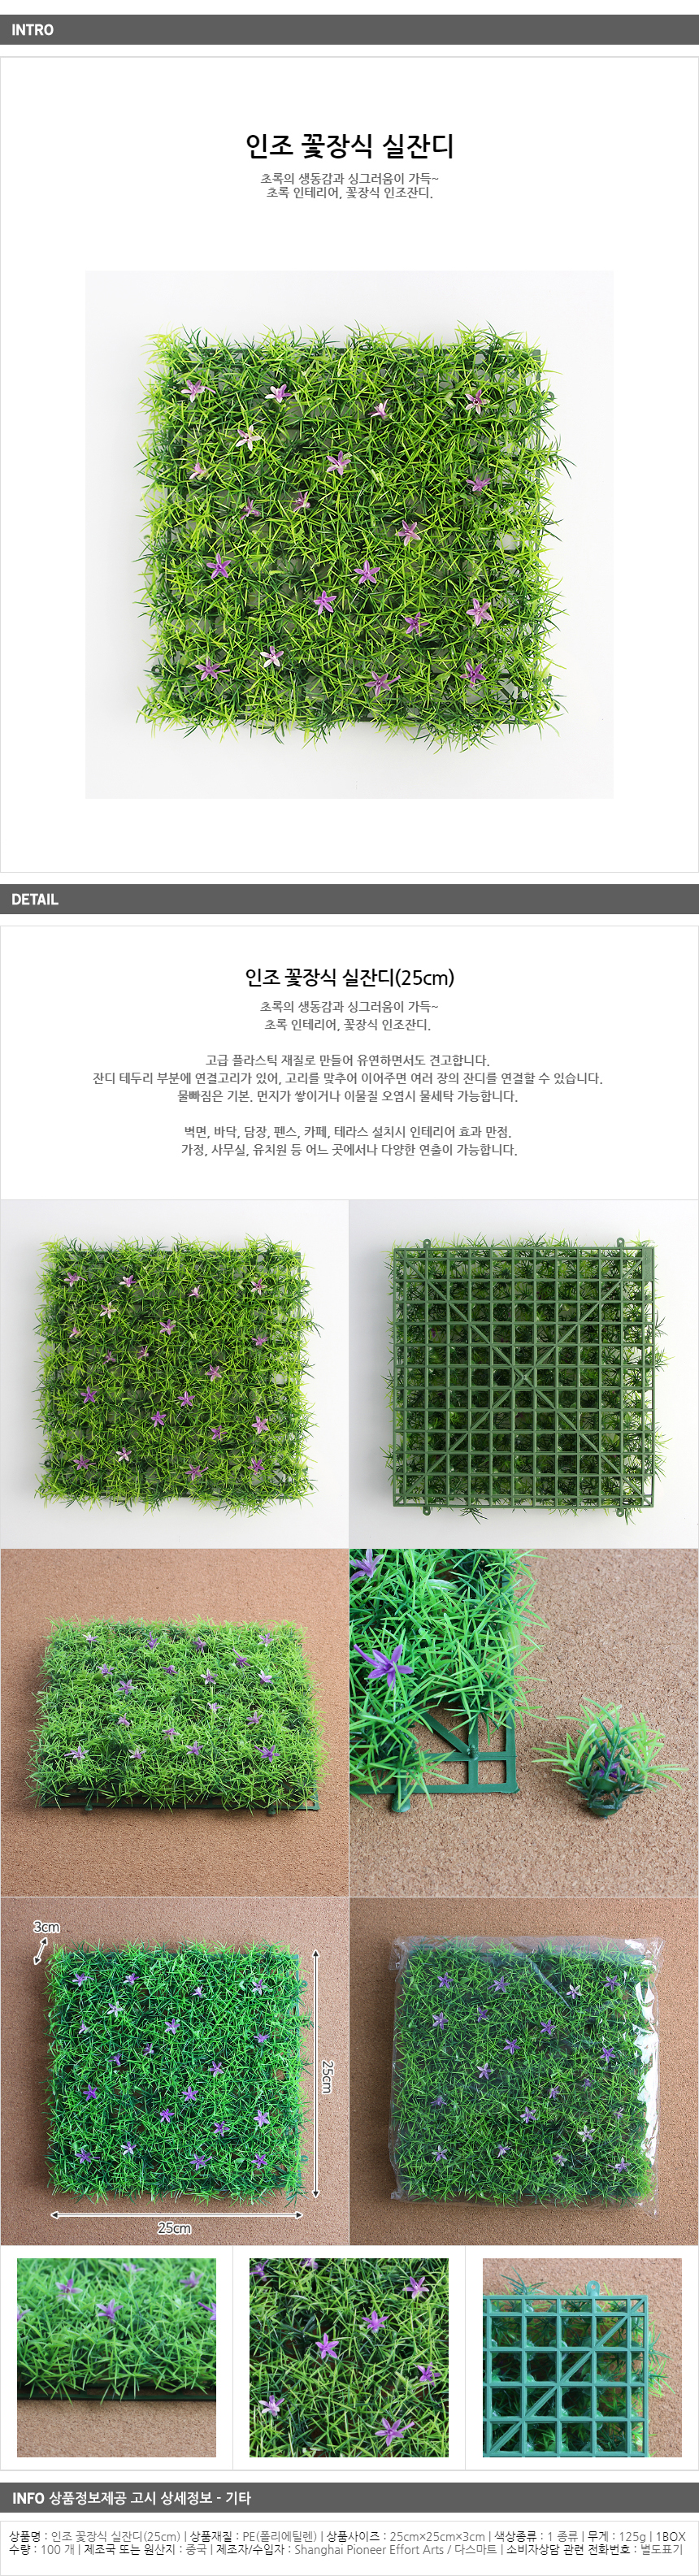 인조 꽃장식 실잔디(25cm)/인테리어 잔디 잔디매트